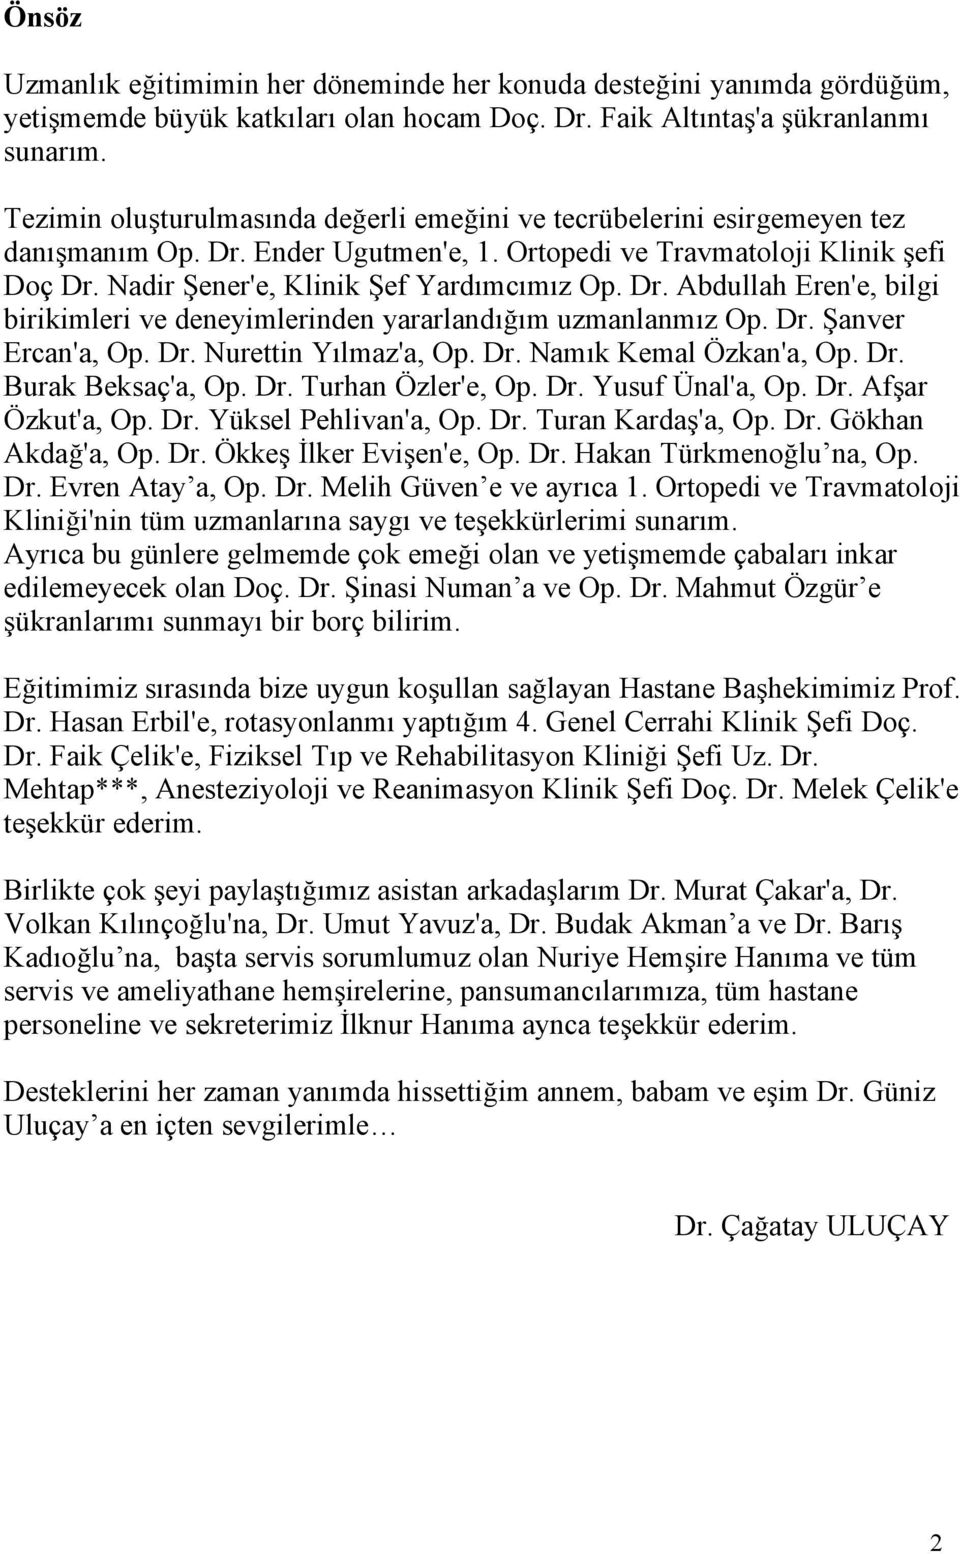 Dr. Abdullah Eren'e, bilgi birikimleri ve deneyimlerinden yararlandığım uzmanlanmız Op. Dr. Şanver Ercan'a, Op. Dr. Nurettin Yılmaz'a, Op. Dr. Namık Kemal Özkan'a, Op. Dr. Burak Beksaç'a, Op. Dr. Turhan Özler'e, Op.